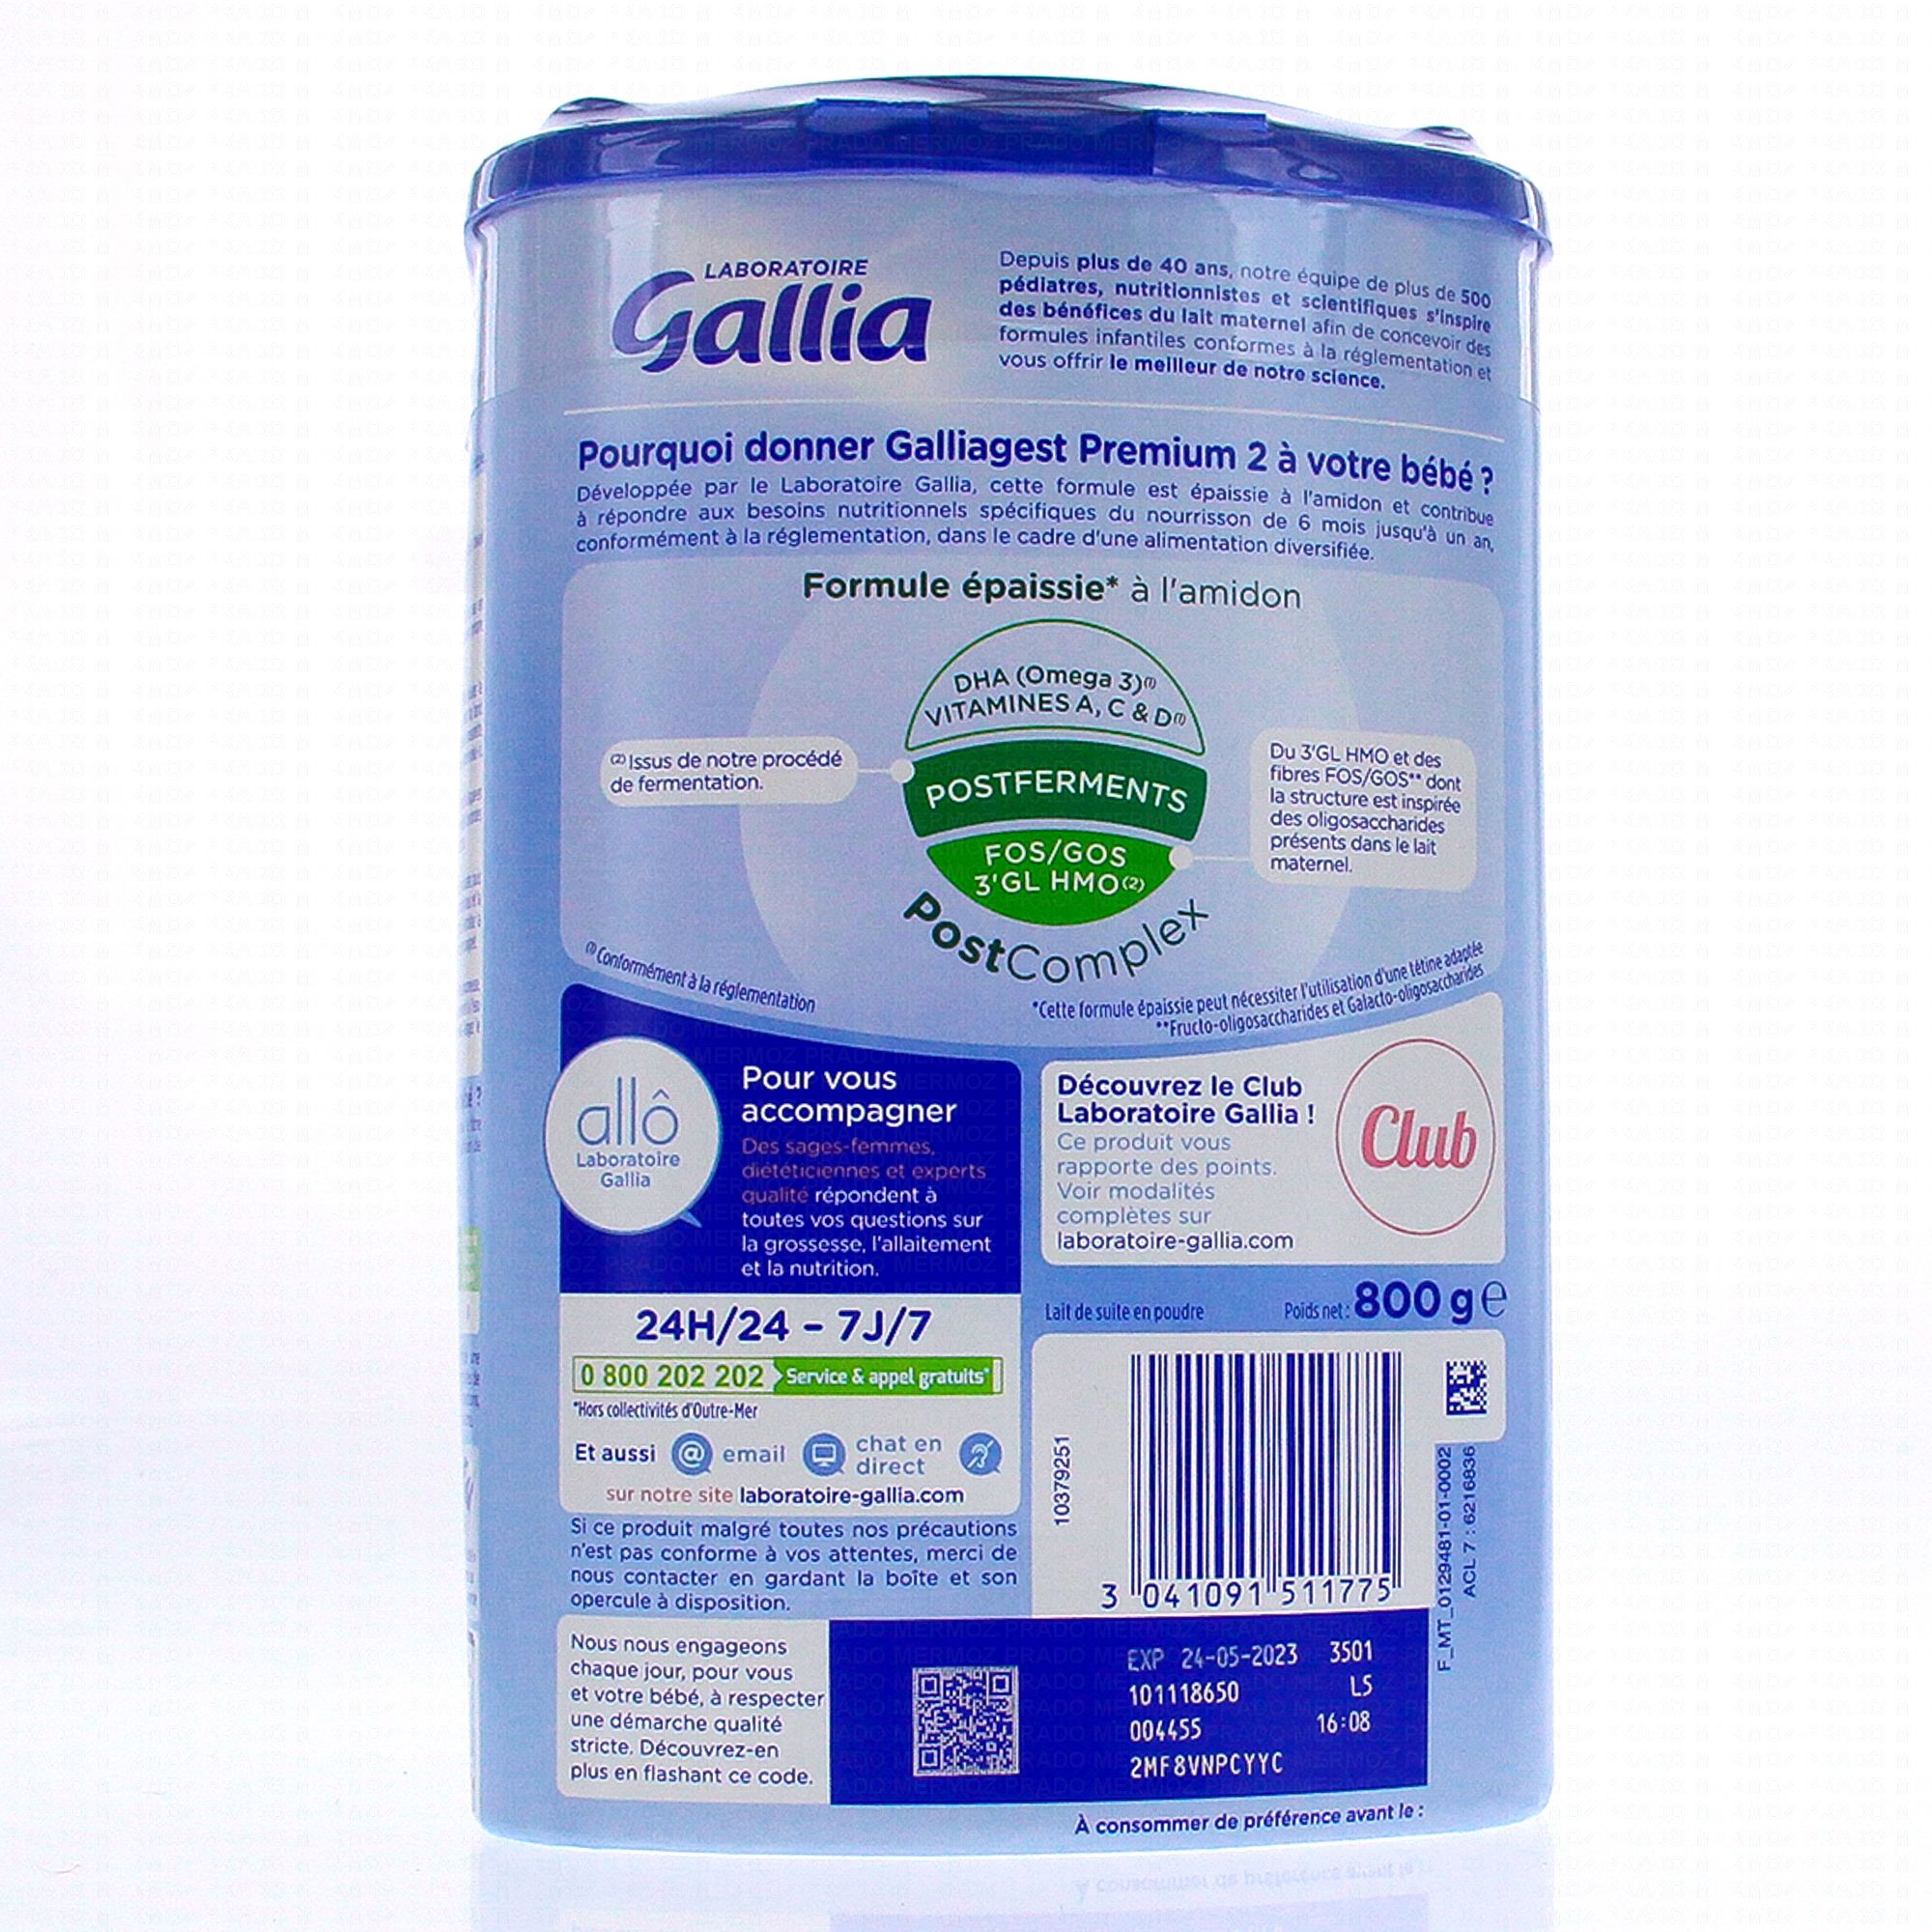 Gallia galliagest premium 2 âge formule épaissie - Gallia